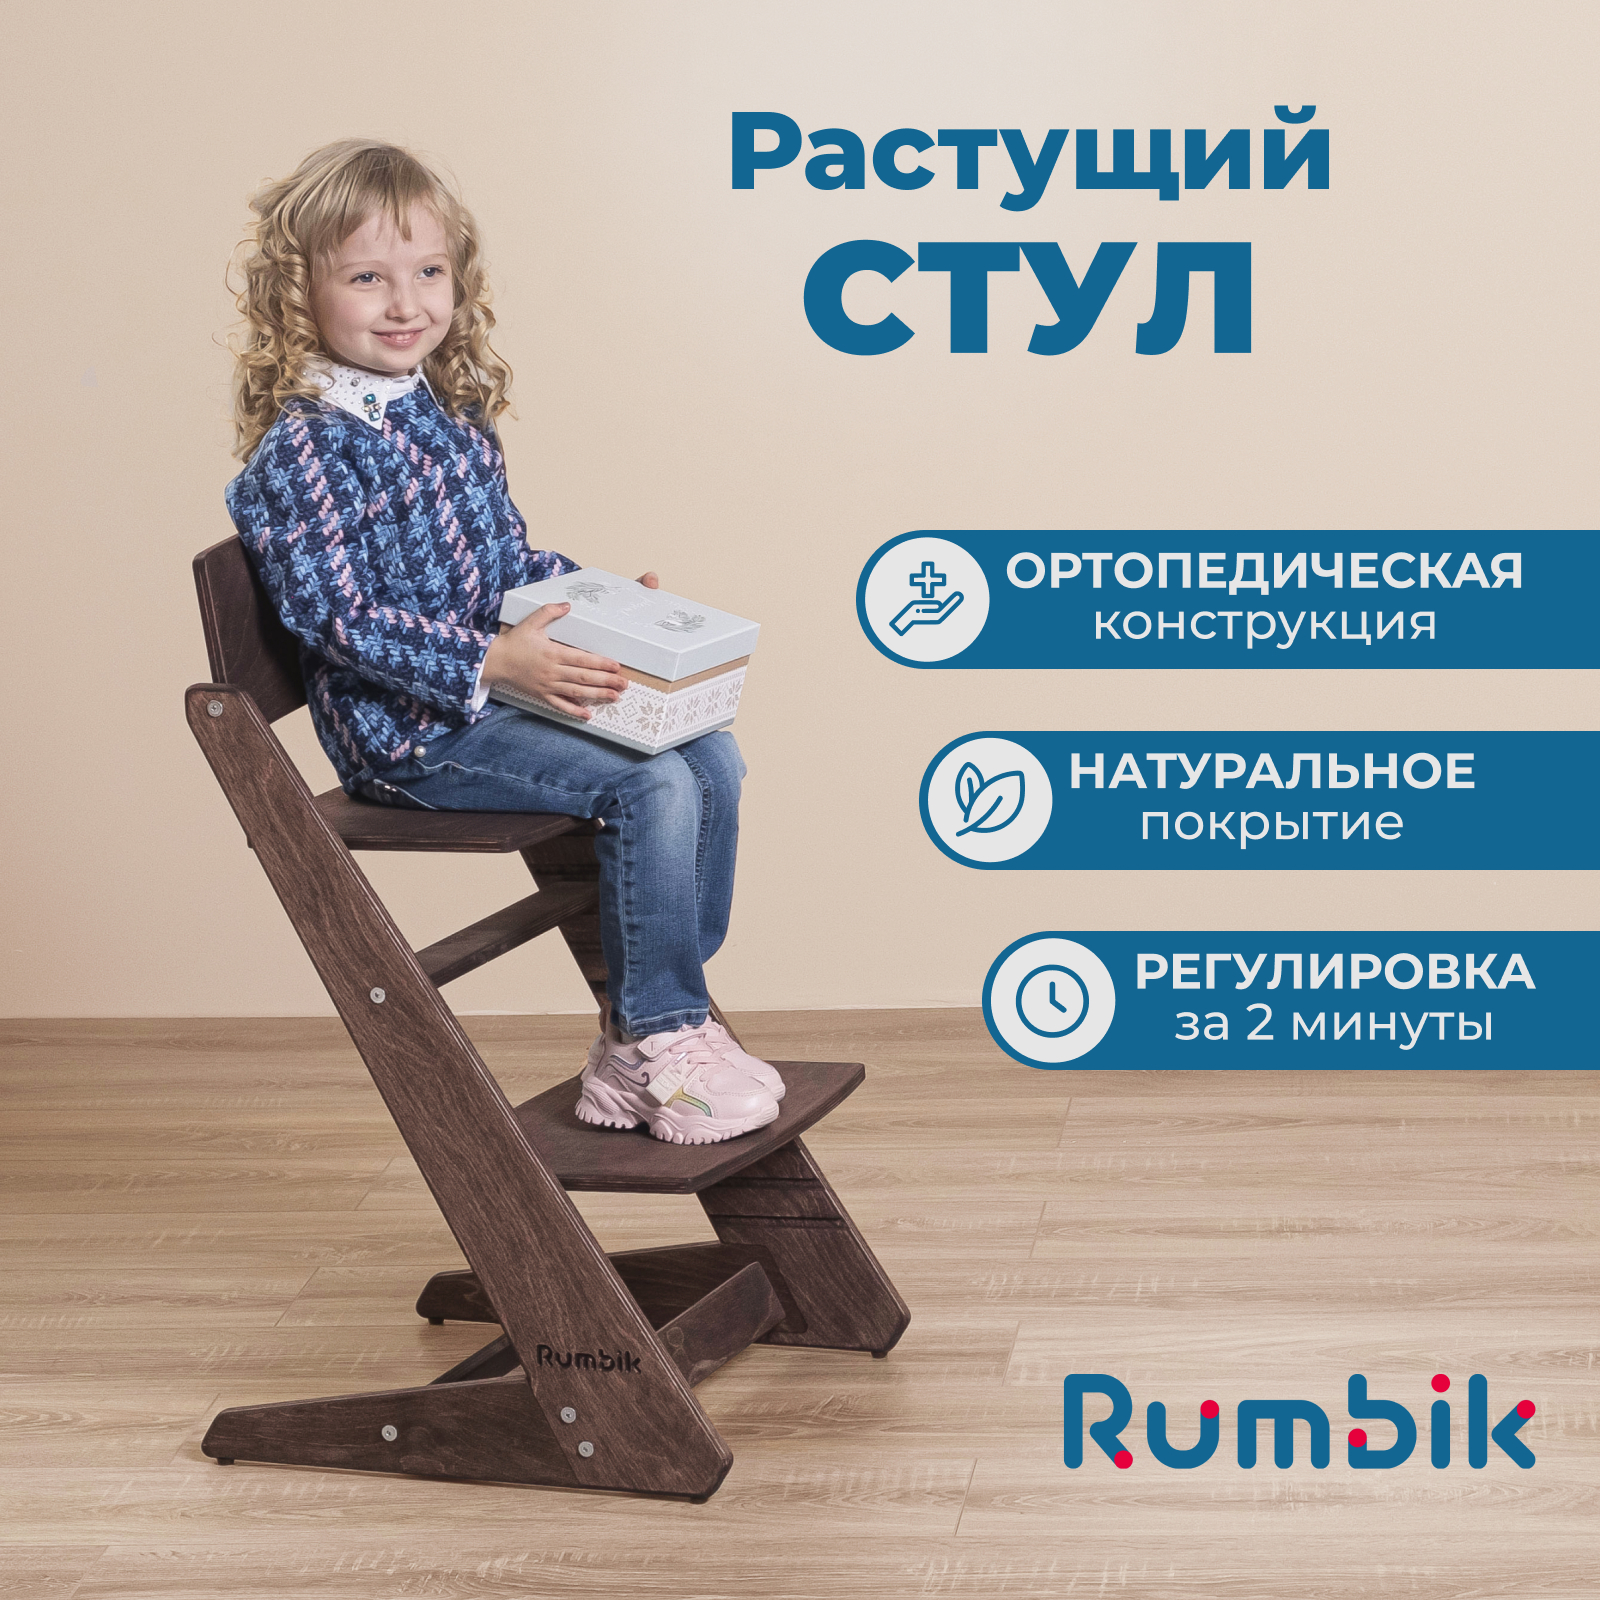 Растущий стул для детей Rumbik Kit венге, регулируемый стульчик для кормления, деревянный стульчик для кормления roba растущий sit up super maxi